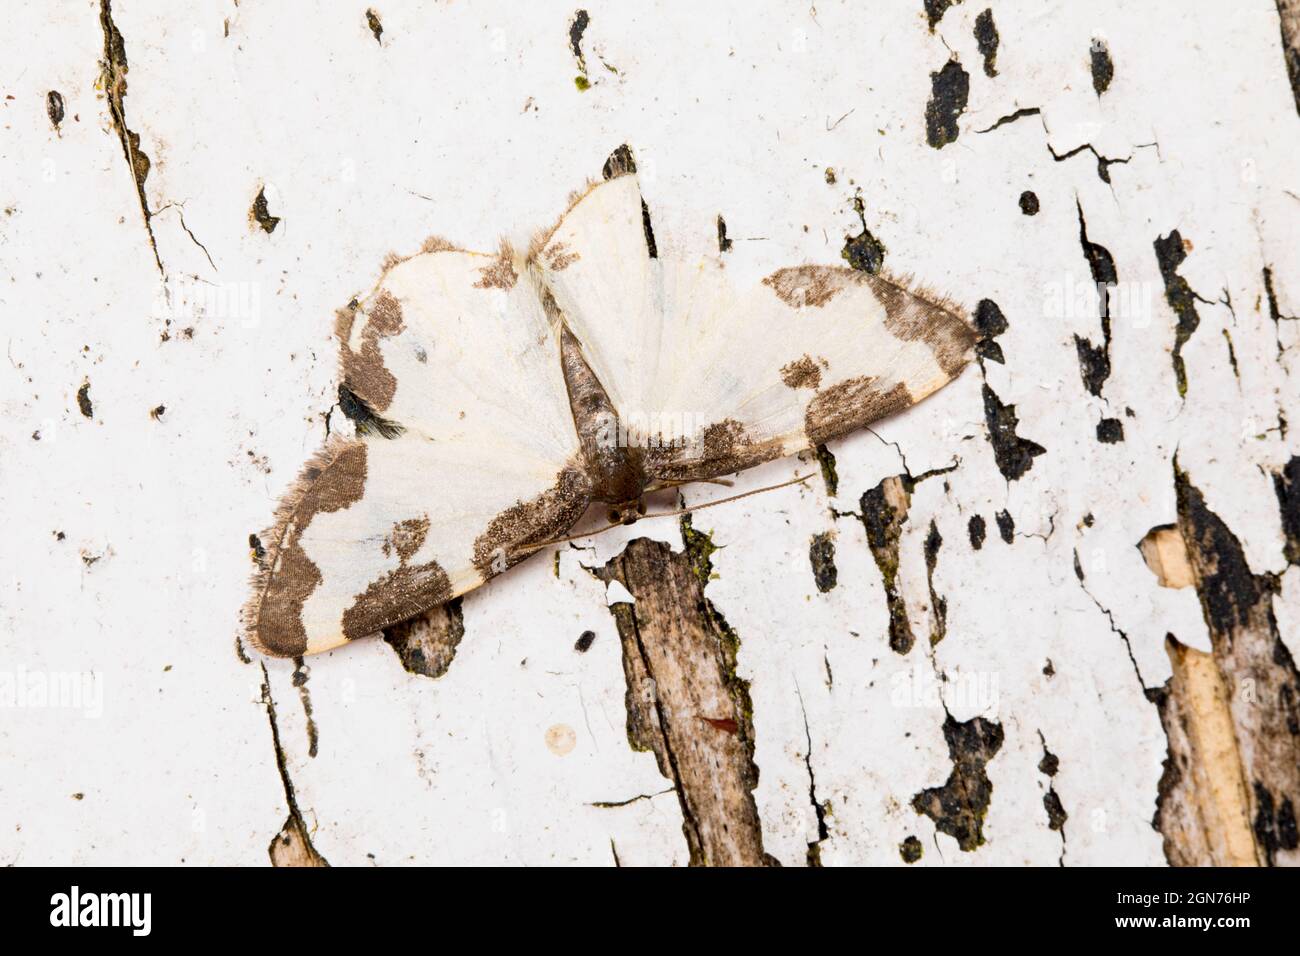 Papillon des papillons (Lomaspilis marginata) adulte reposant sur une peinture blanche écaillée. Powys, pays de Galles. Juin. Banque D'Images